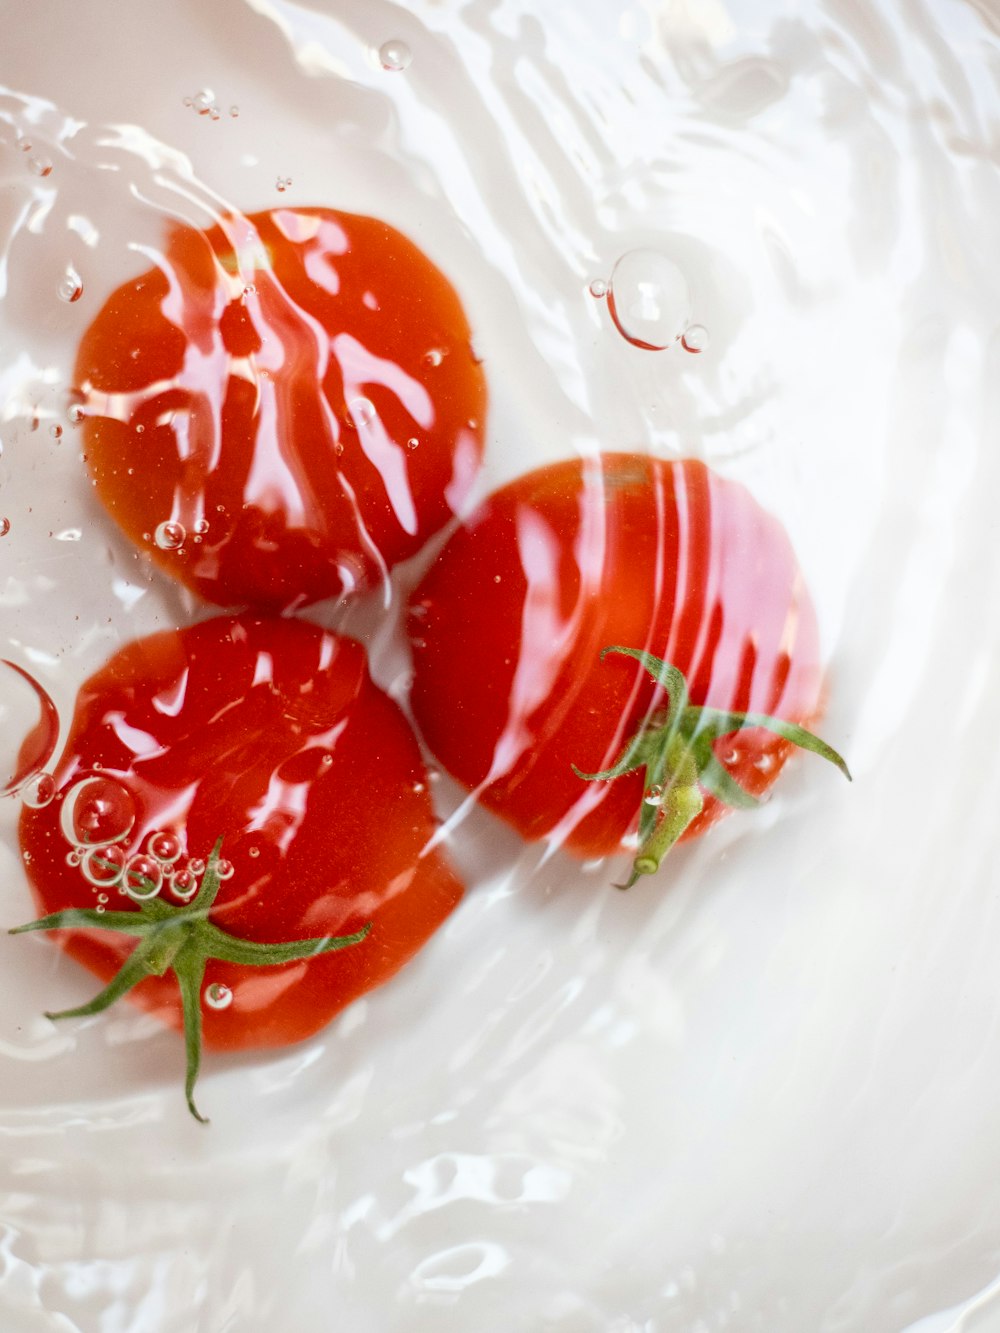 물에 빨간 토마토 3 개